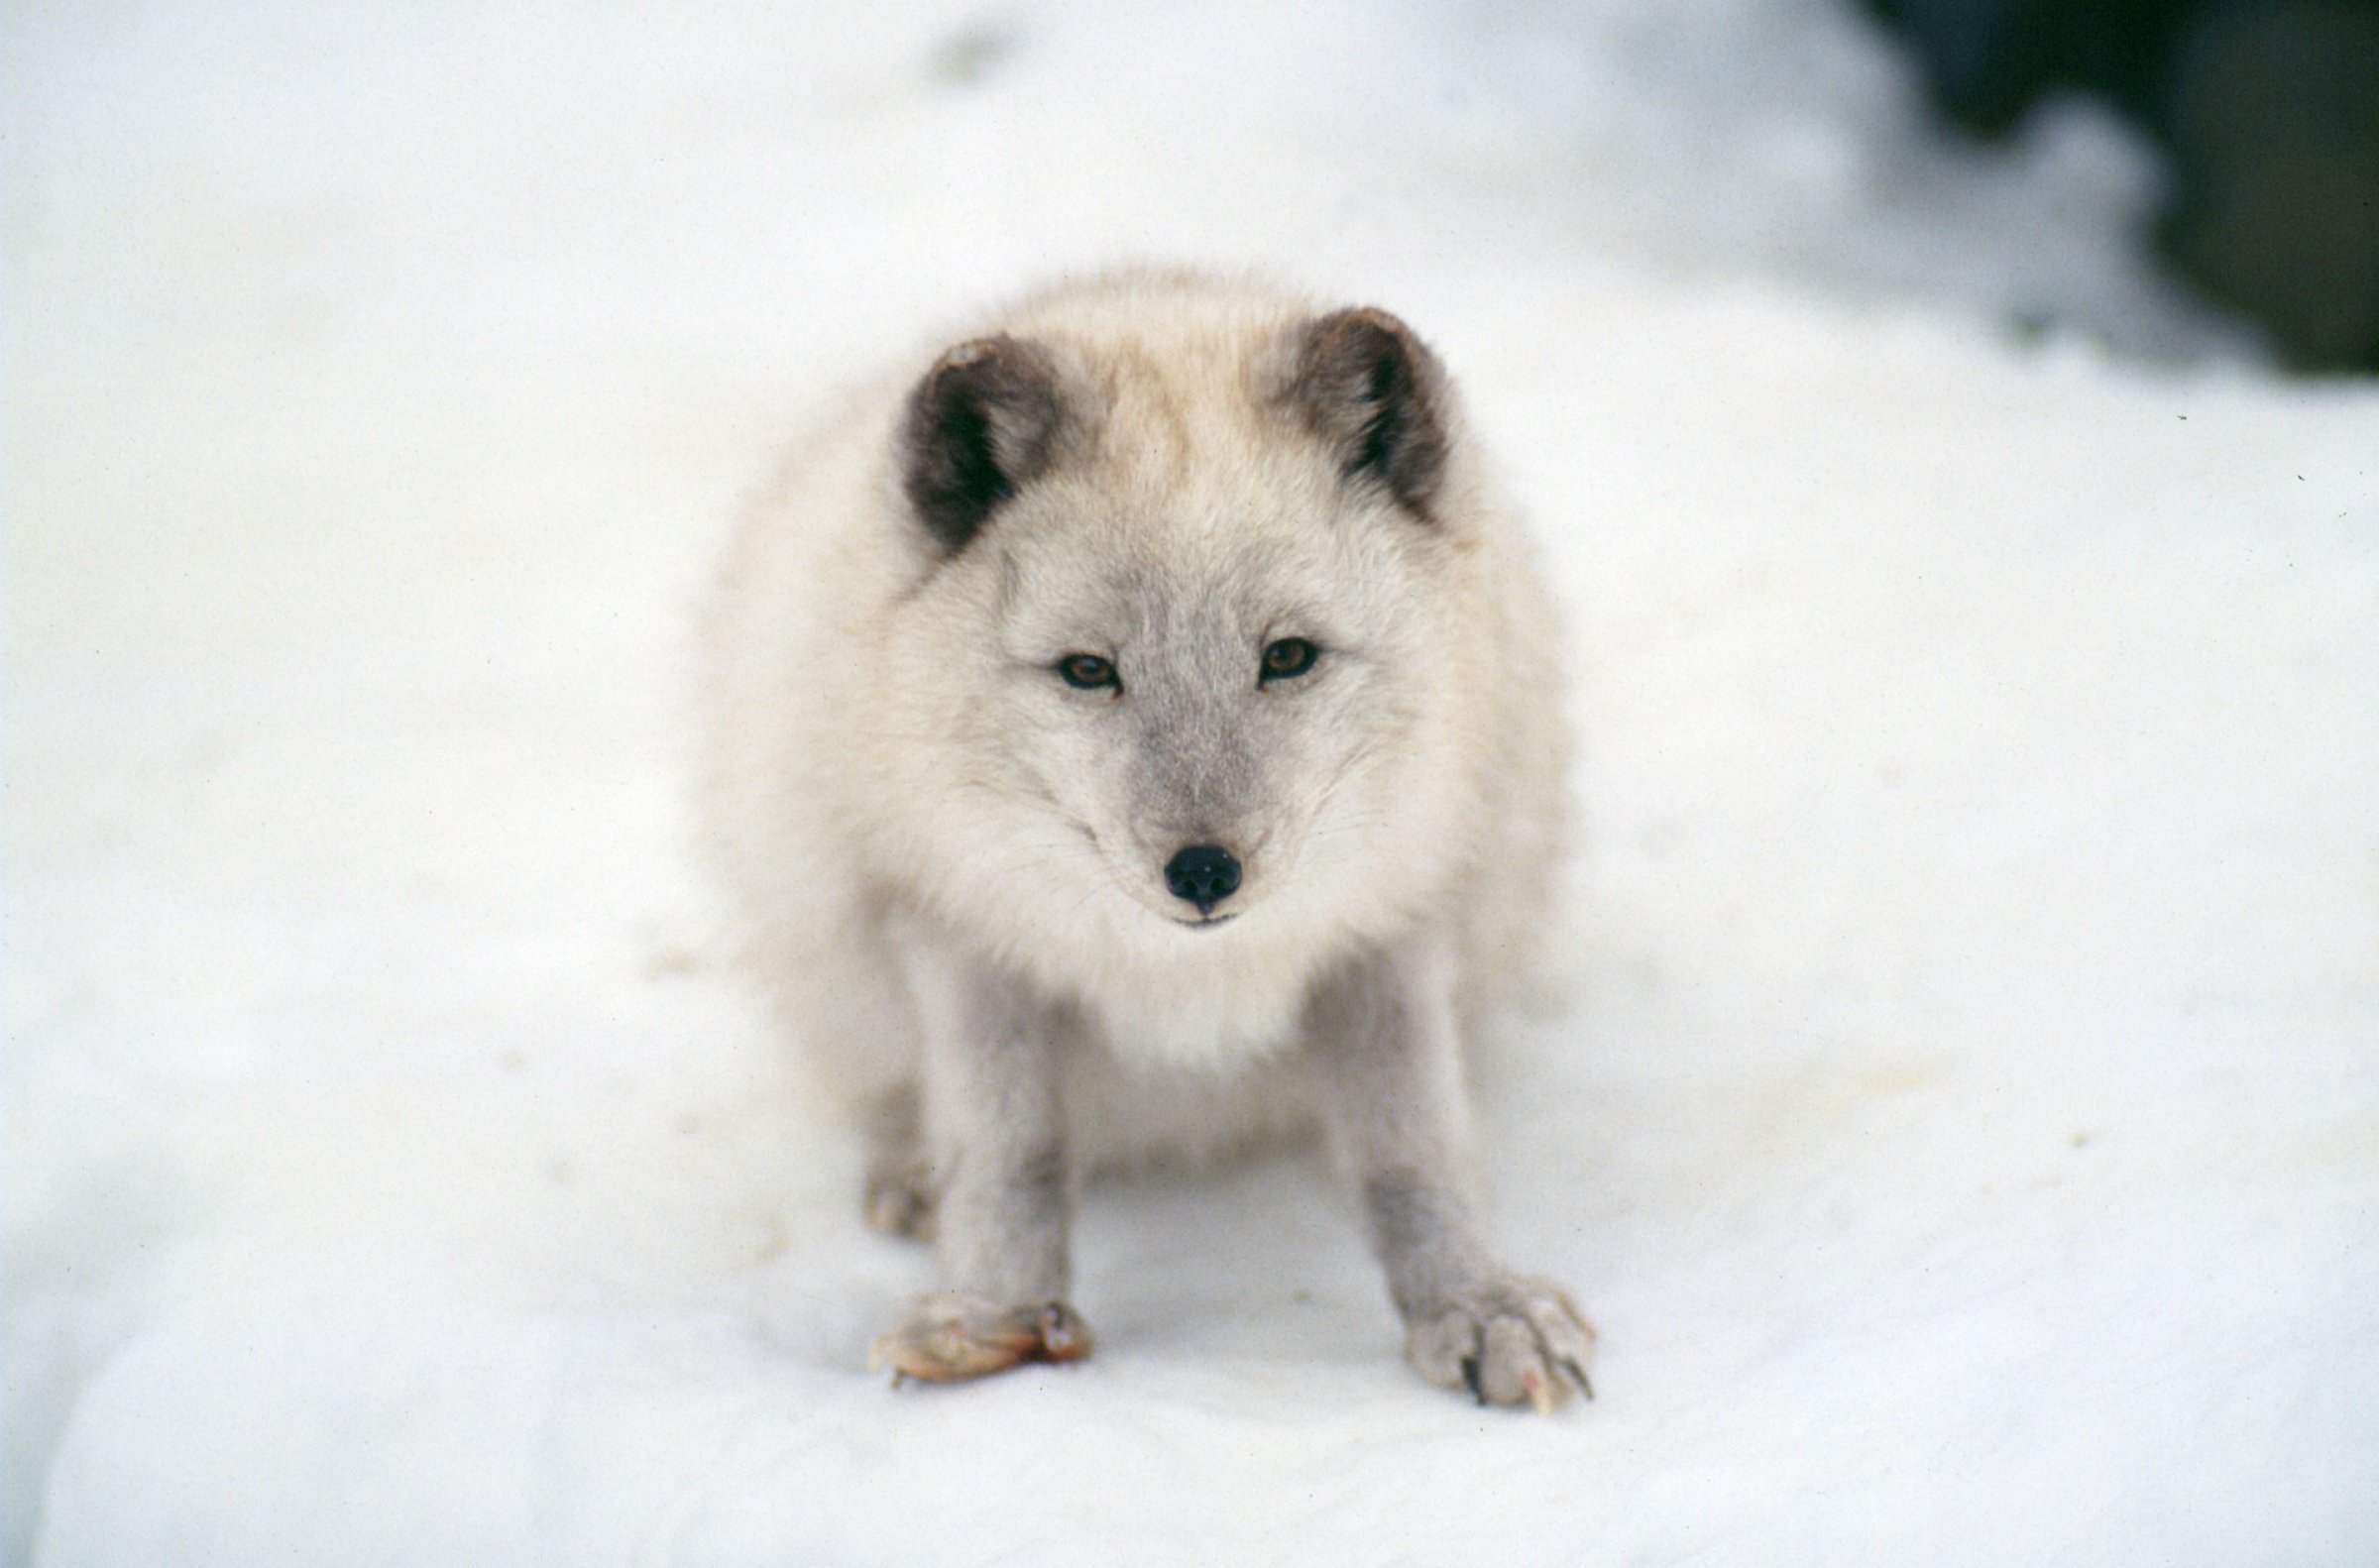 Det er funnet lus hos rev på Svalbard. Veterinærinstituttet oppfordrer hundeeiere å sjekke dyrene sine for lus. Foto: Pixabay